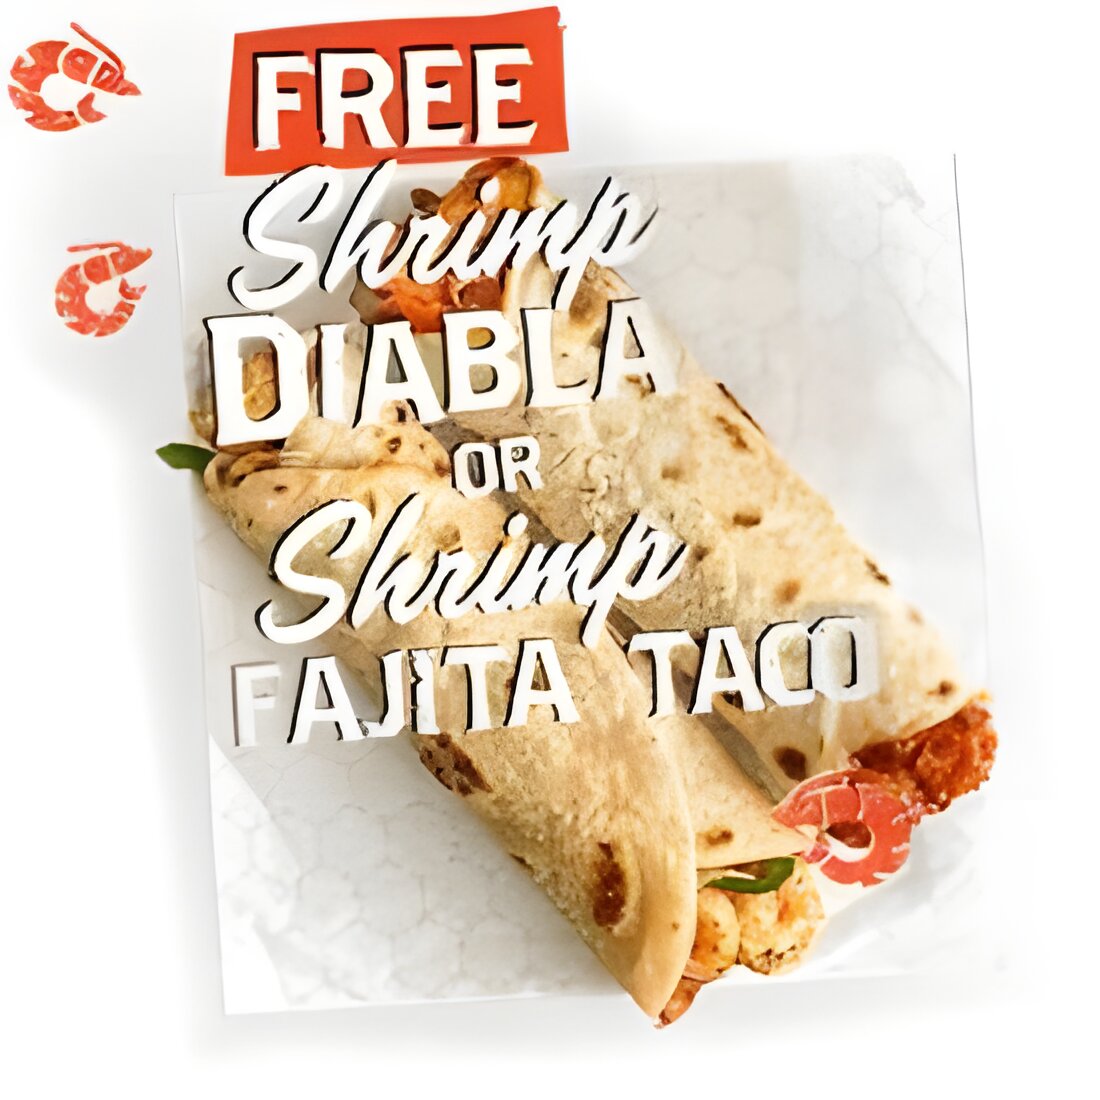 Free Shrimp Diabla or Shrimp Fajita Taco